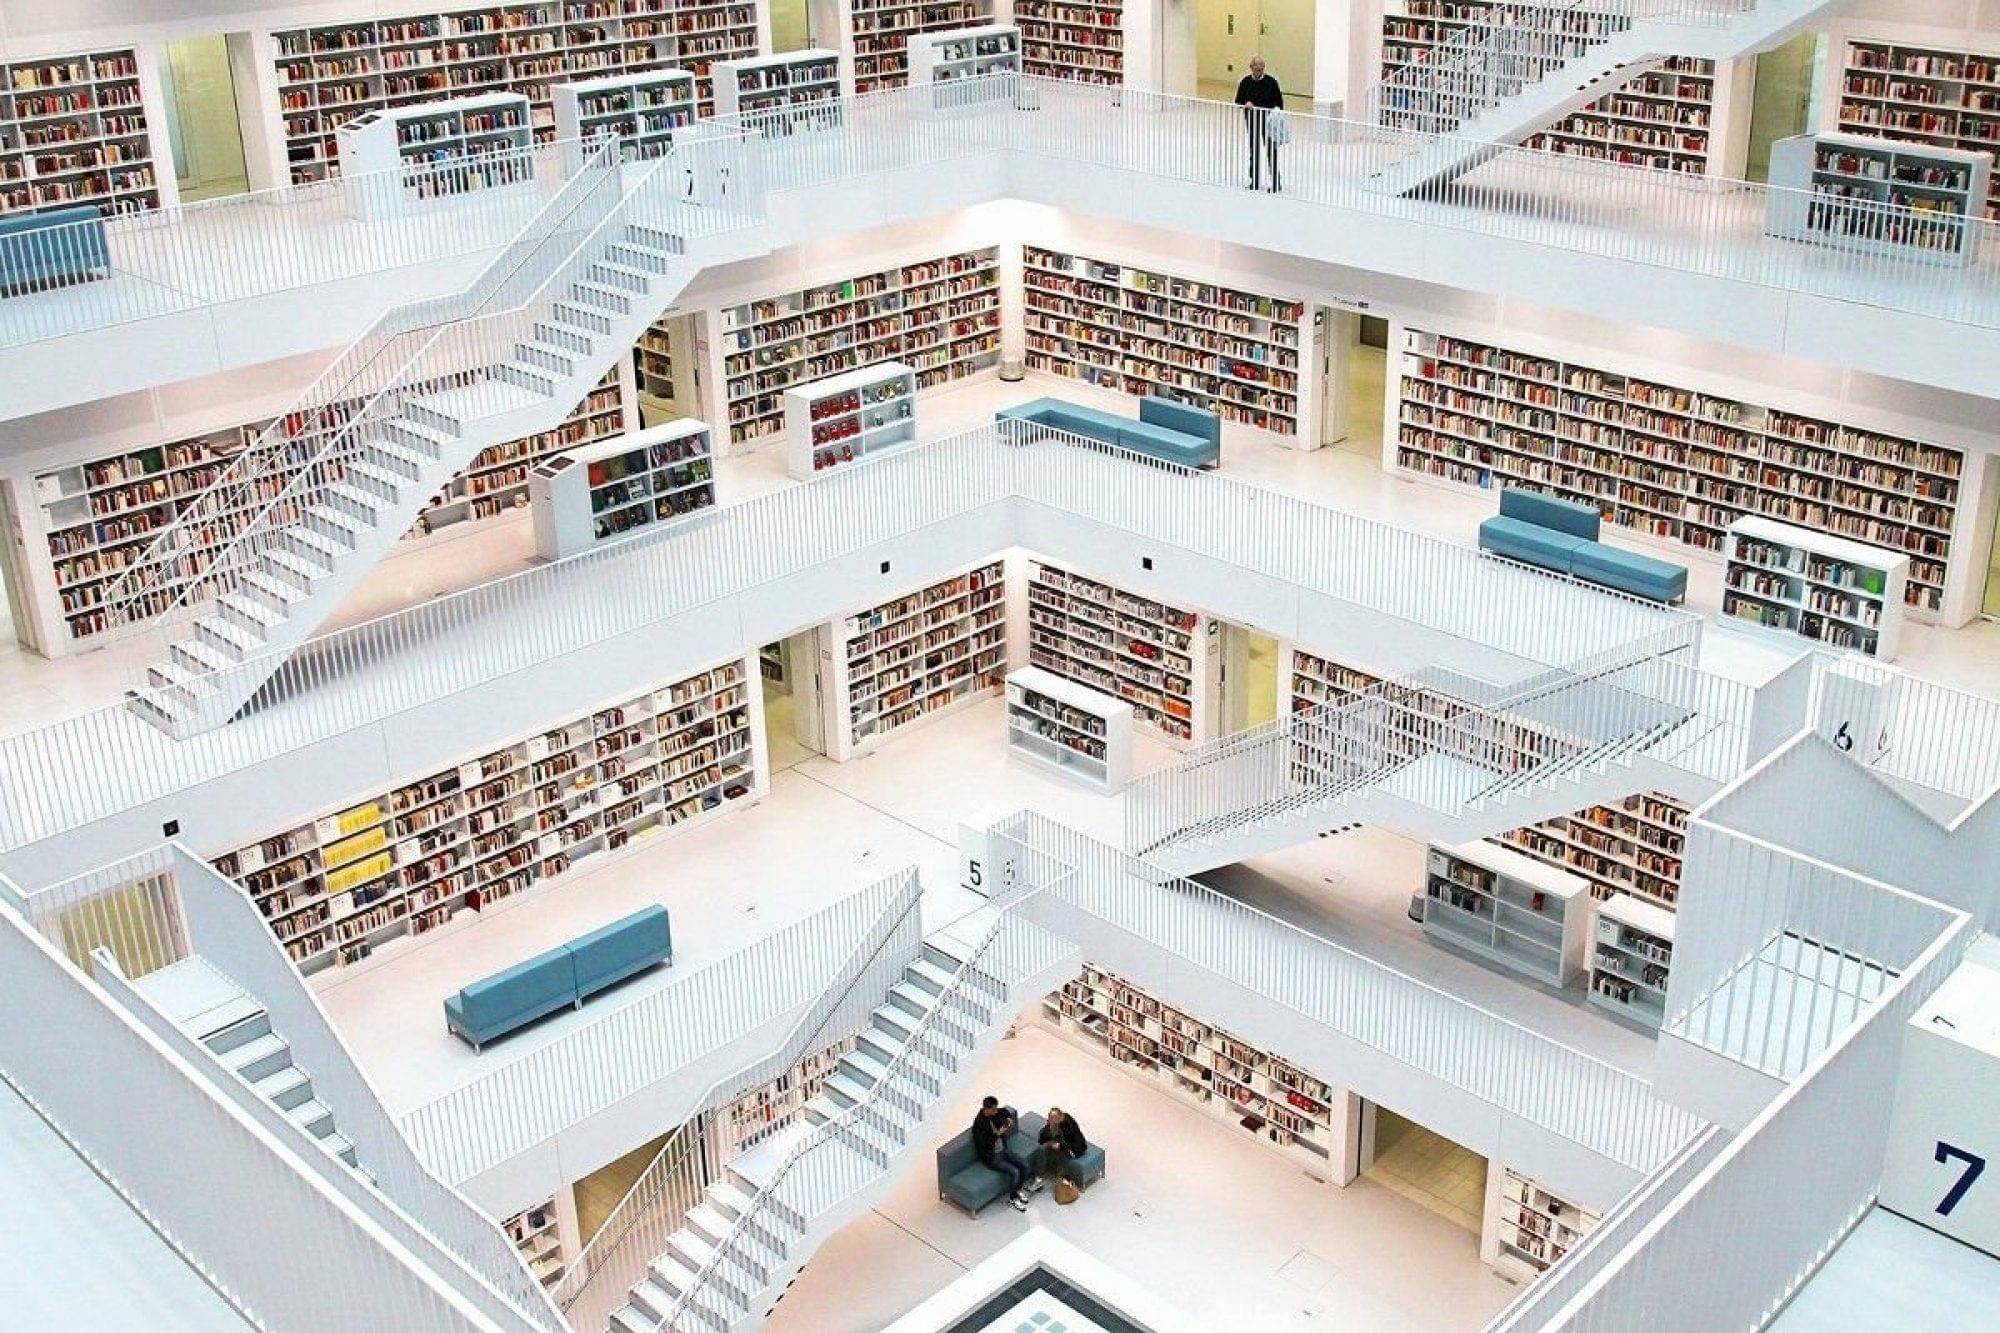 Platform library. Городская библиотека Штутгарта. Штутгартская городская библиотека, Германия. Библиотека в Штутгарте Германия. Штадт библиотека Штутгарта.